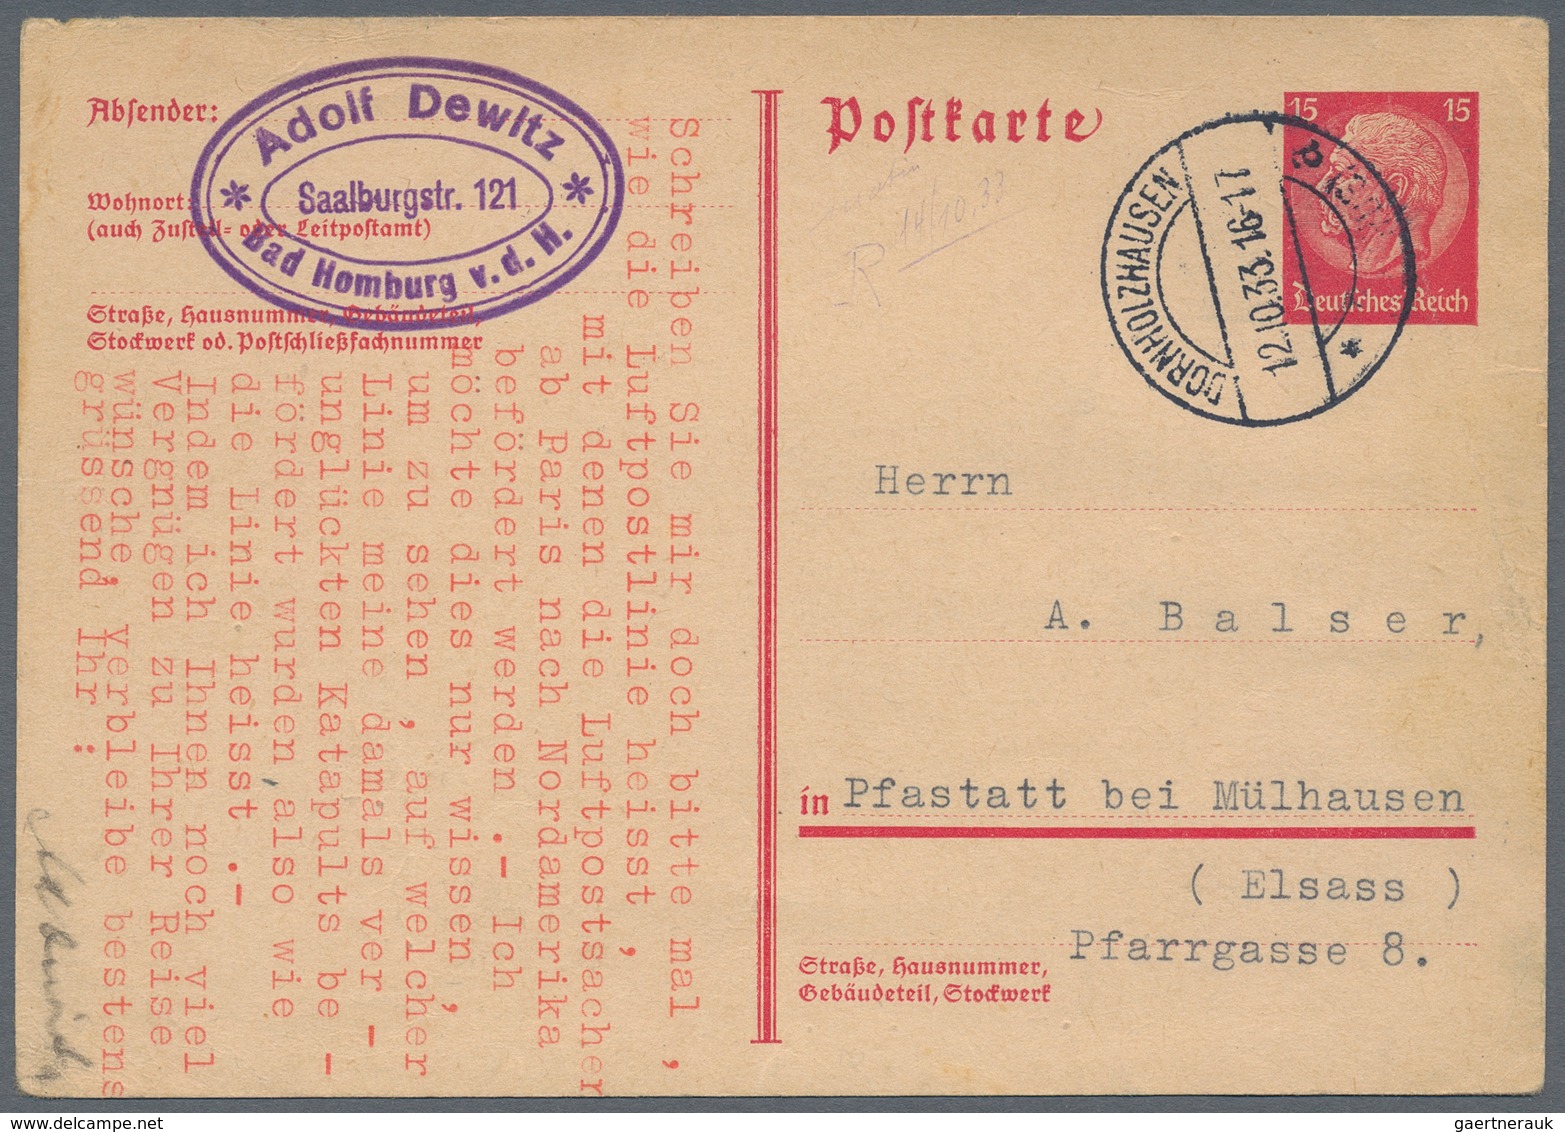 Deutsches Reich - Ganzsachen: 1919/1944, vielseitige Partie von ca. 590 bedarfsgebrauchten Ganzsache